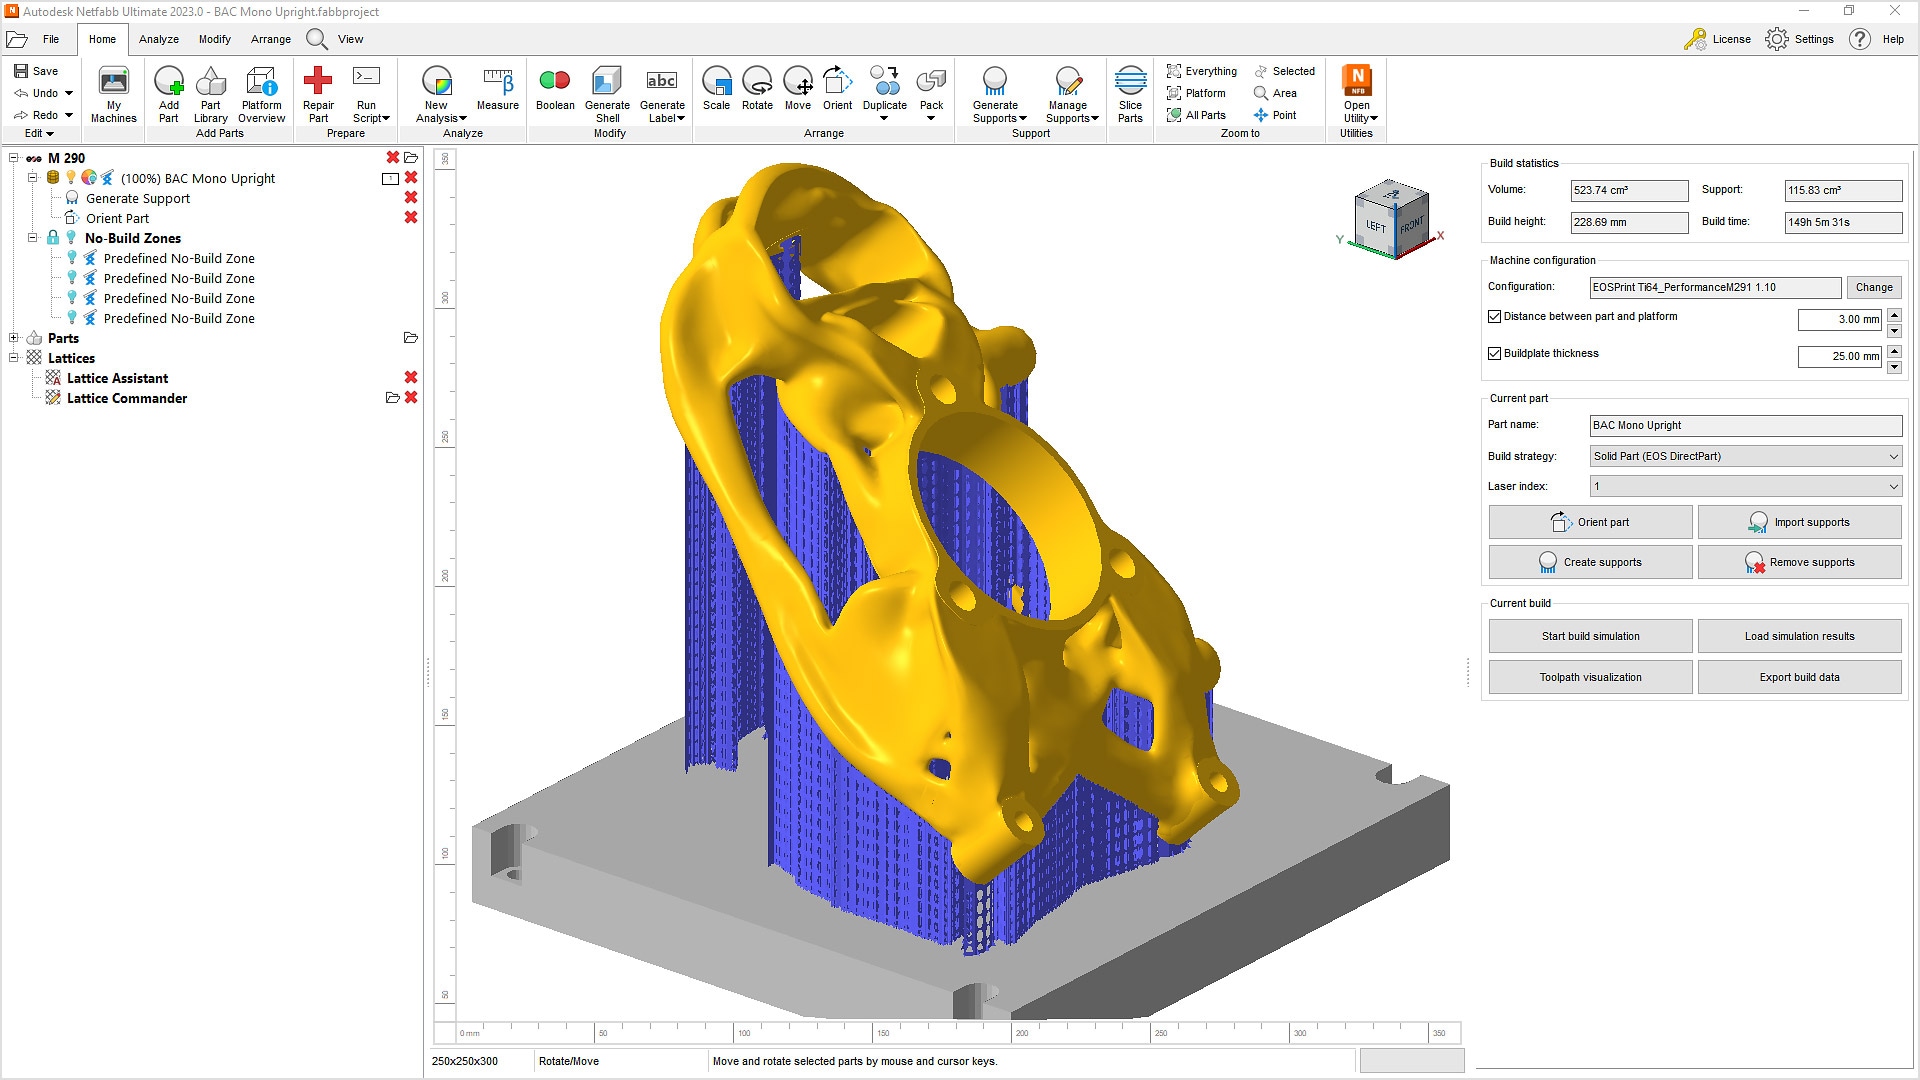 Immagine di un supporto stampato in metallo 3D in Autodesk Netfabb che mostra la struttura di supporto e il riepilogo dei dati di costruzione